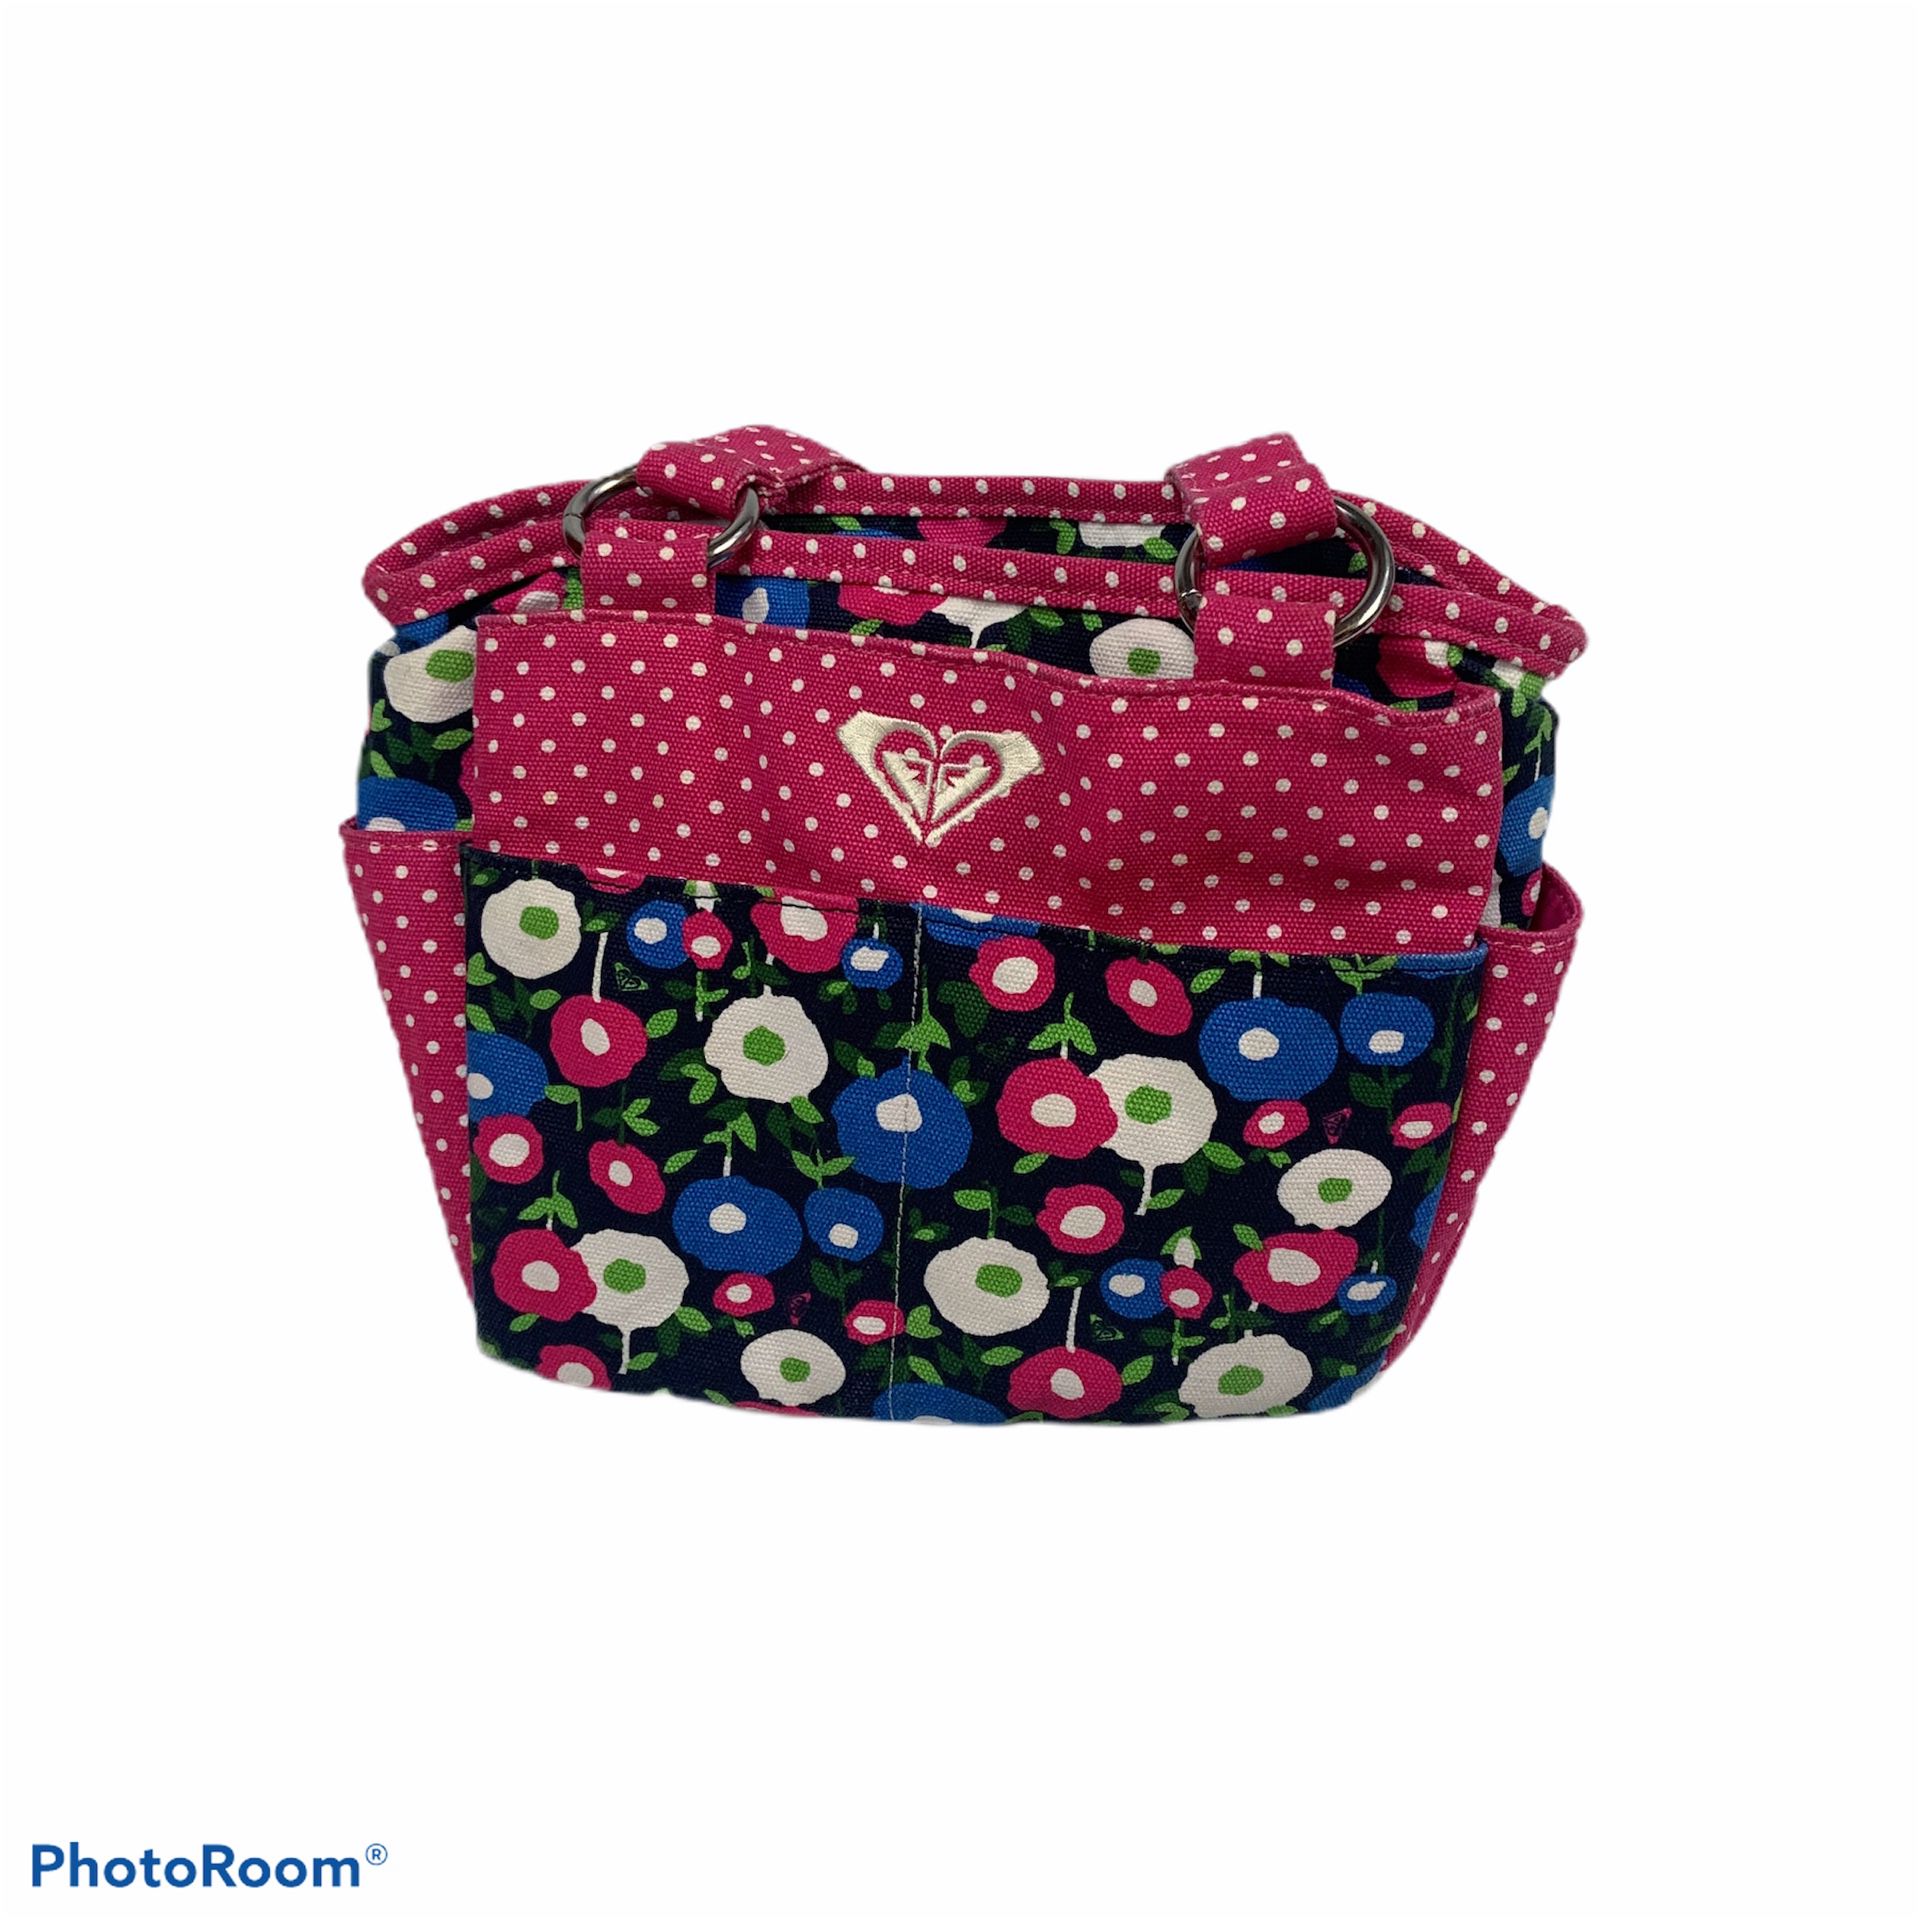 Roxy floral handbag